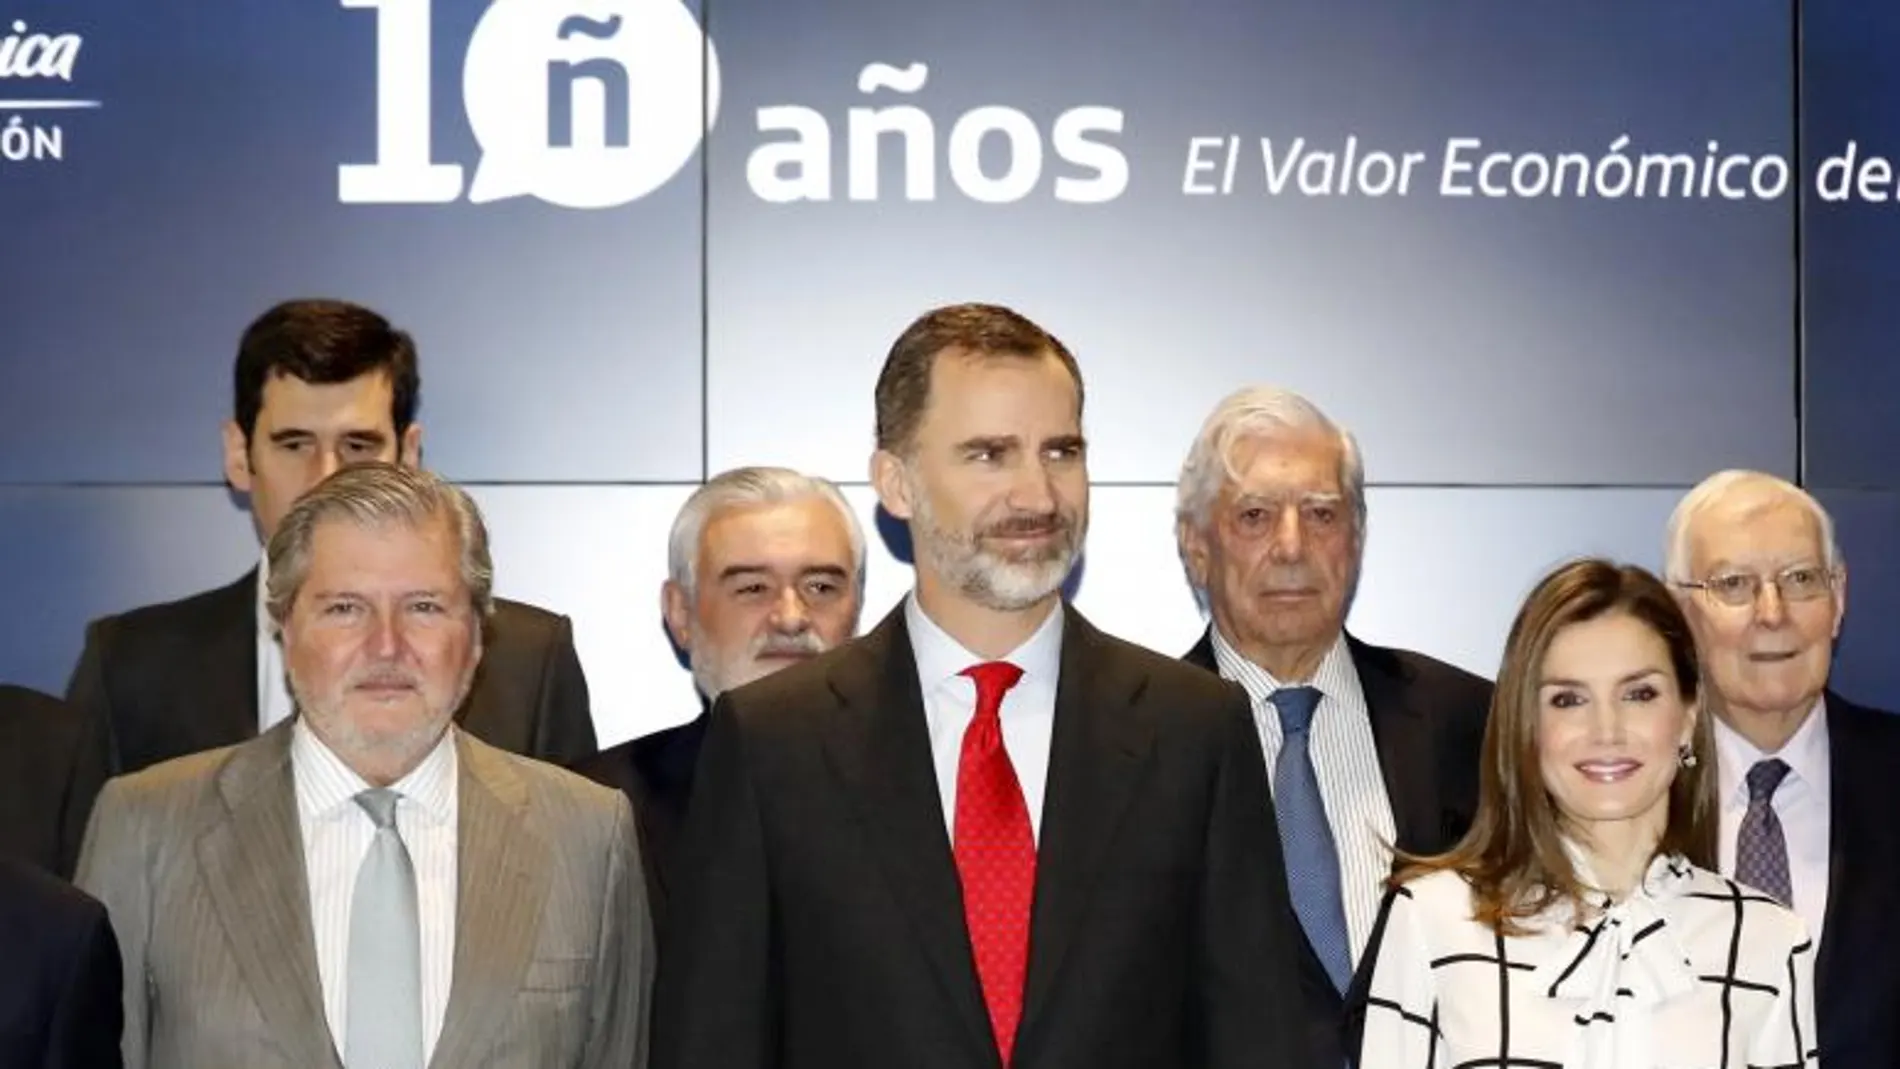 Los Reyes, acompañados por Íñigo Méndez de Vigo, durante el acto de clausurade "El valor económico del español", en el que Vargas Llosa ha pronunciado una conferencia